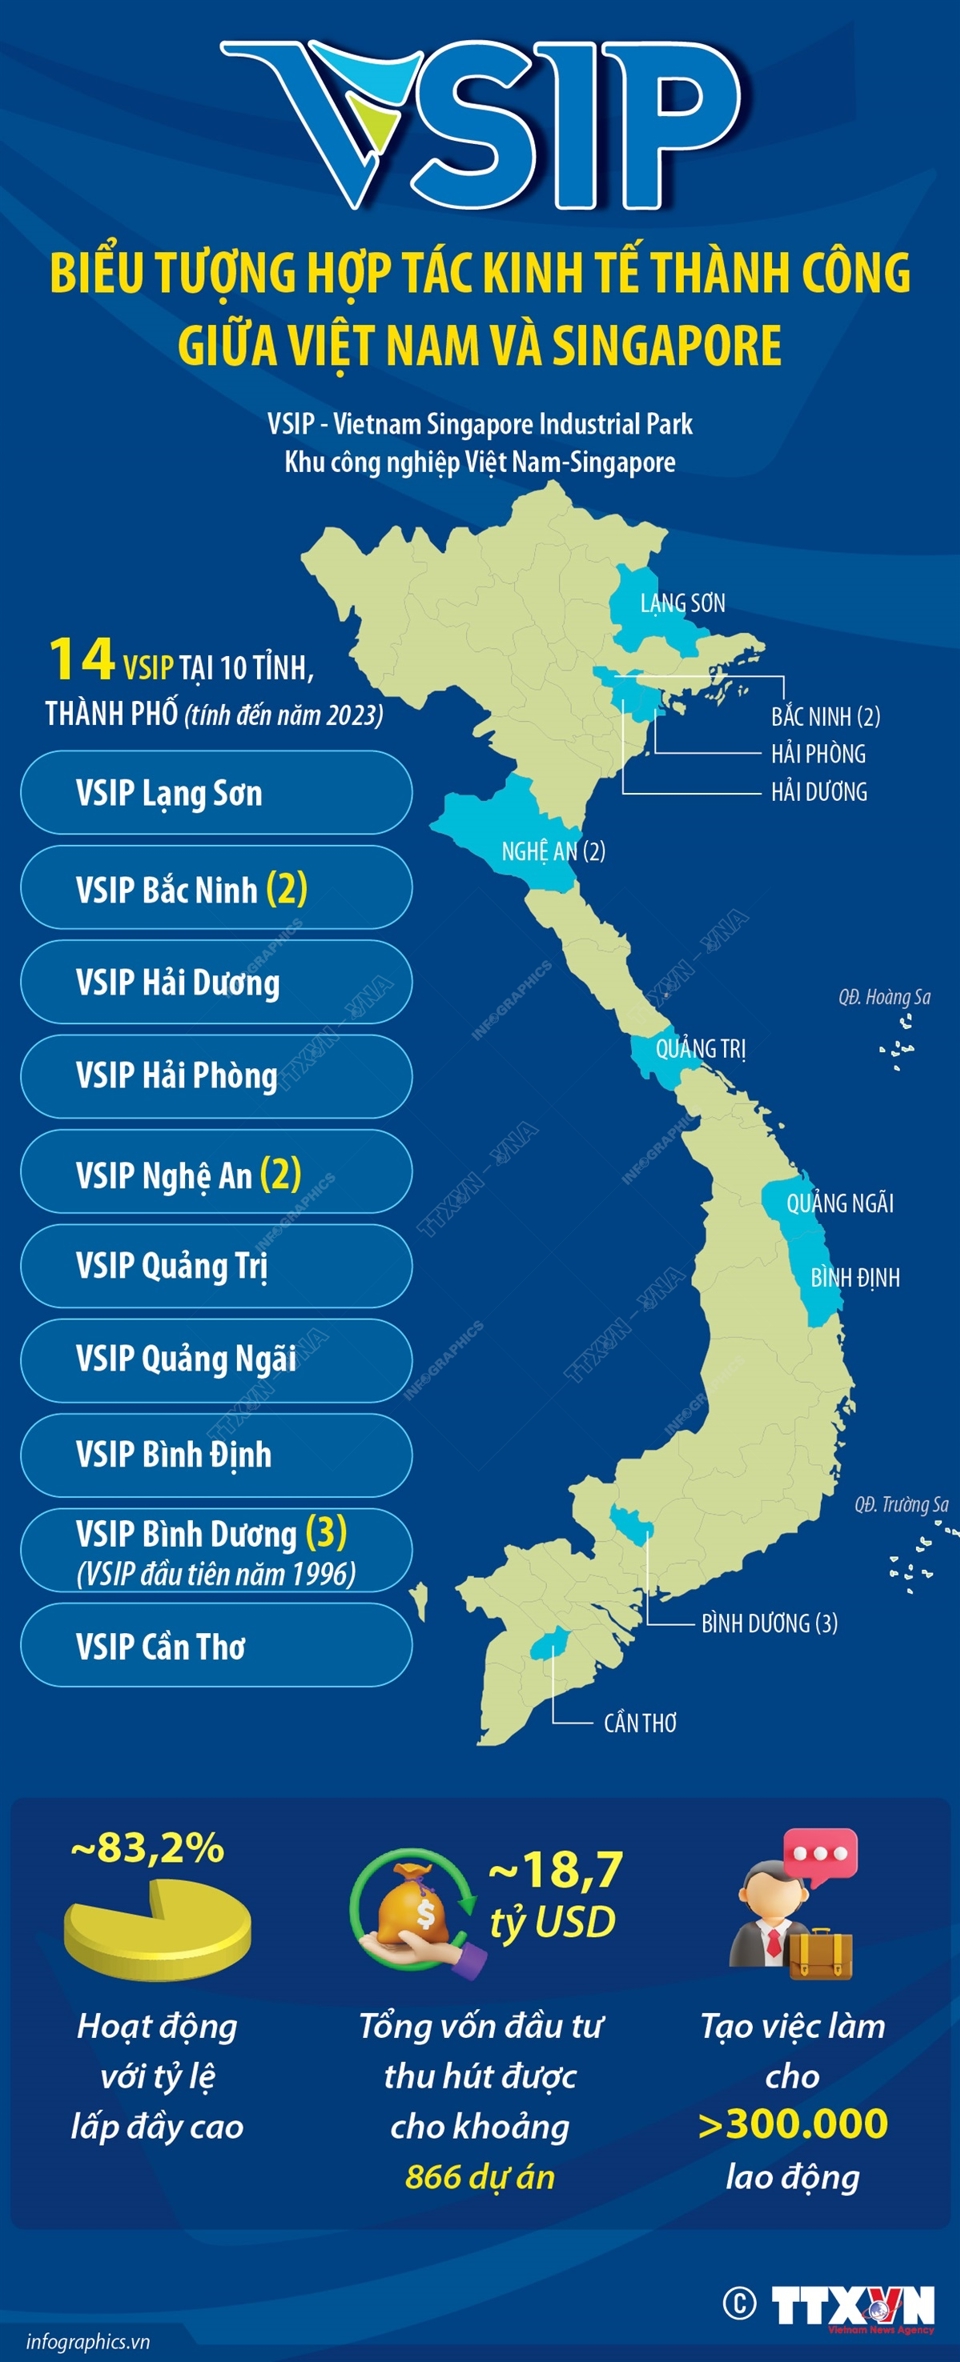 VSIP - Biểu tượng hợp tác kinh tế thành công giữa Việt Nam-Singapore - Ảnh 1